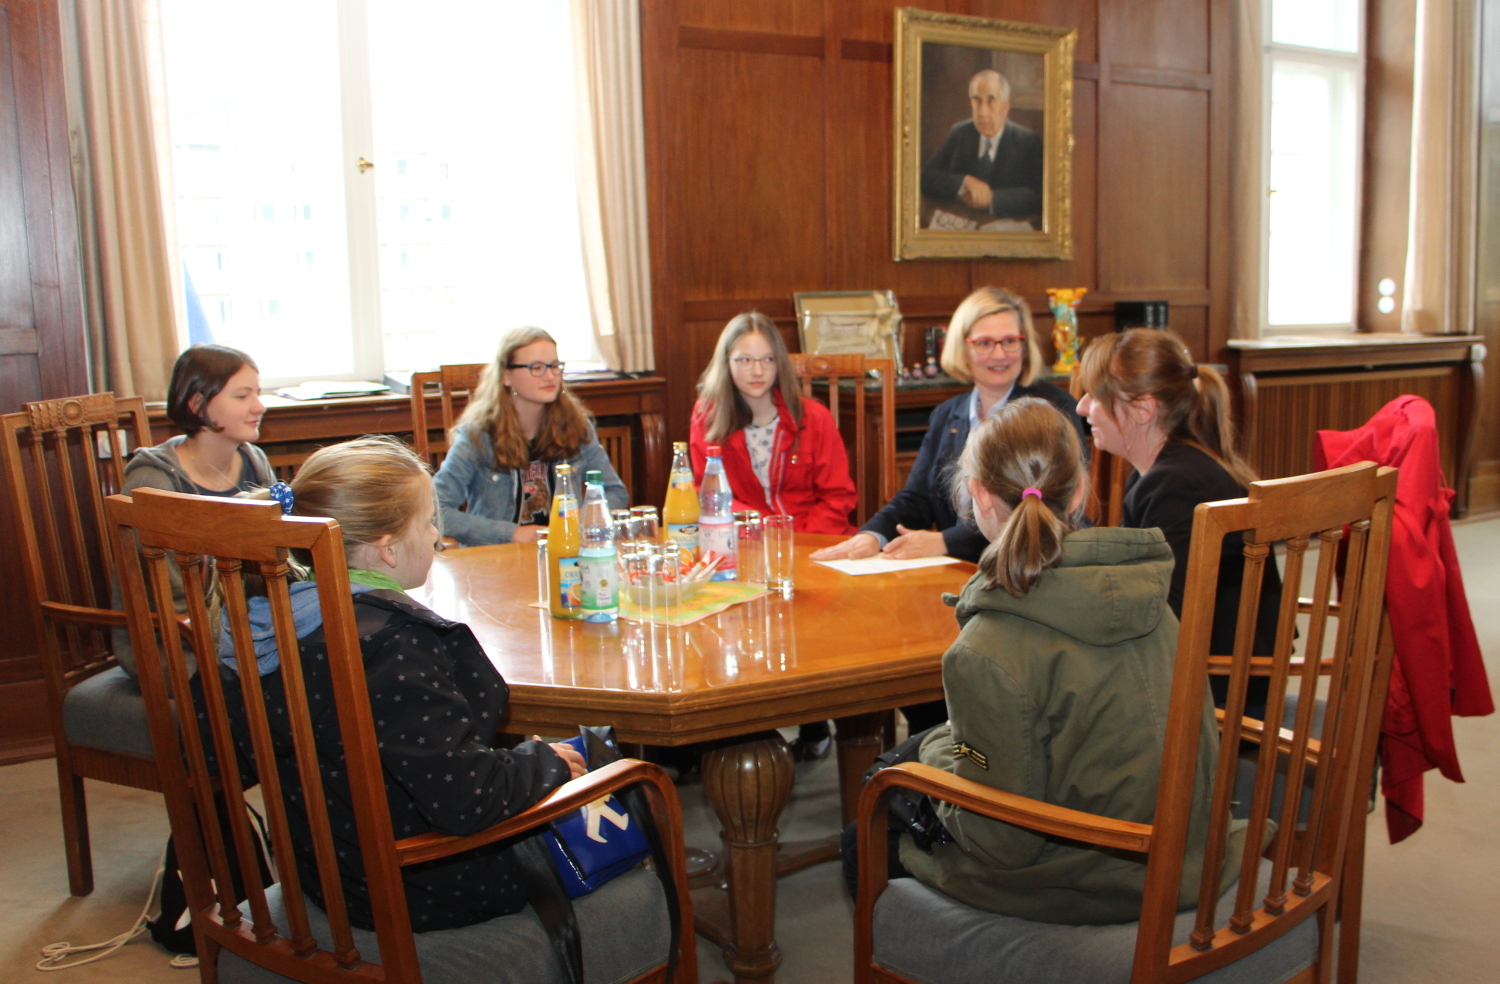 2 Frauen und 5 Mädchen diskutieren am Tisch.